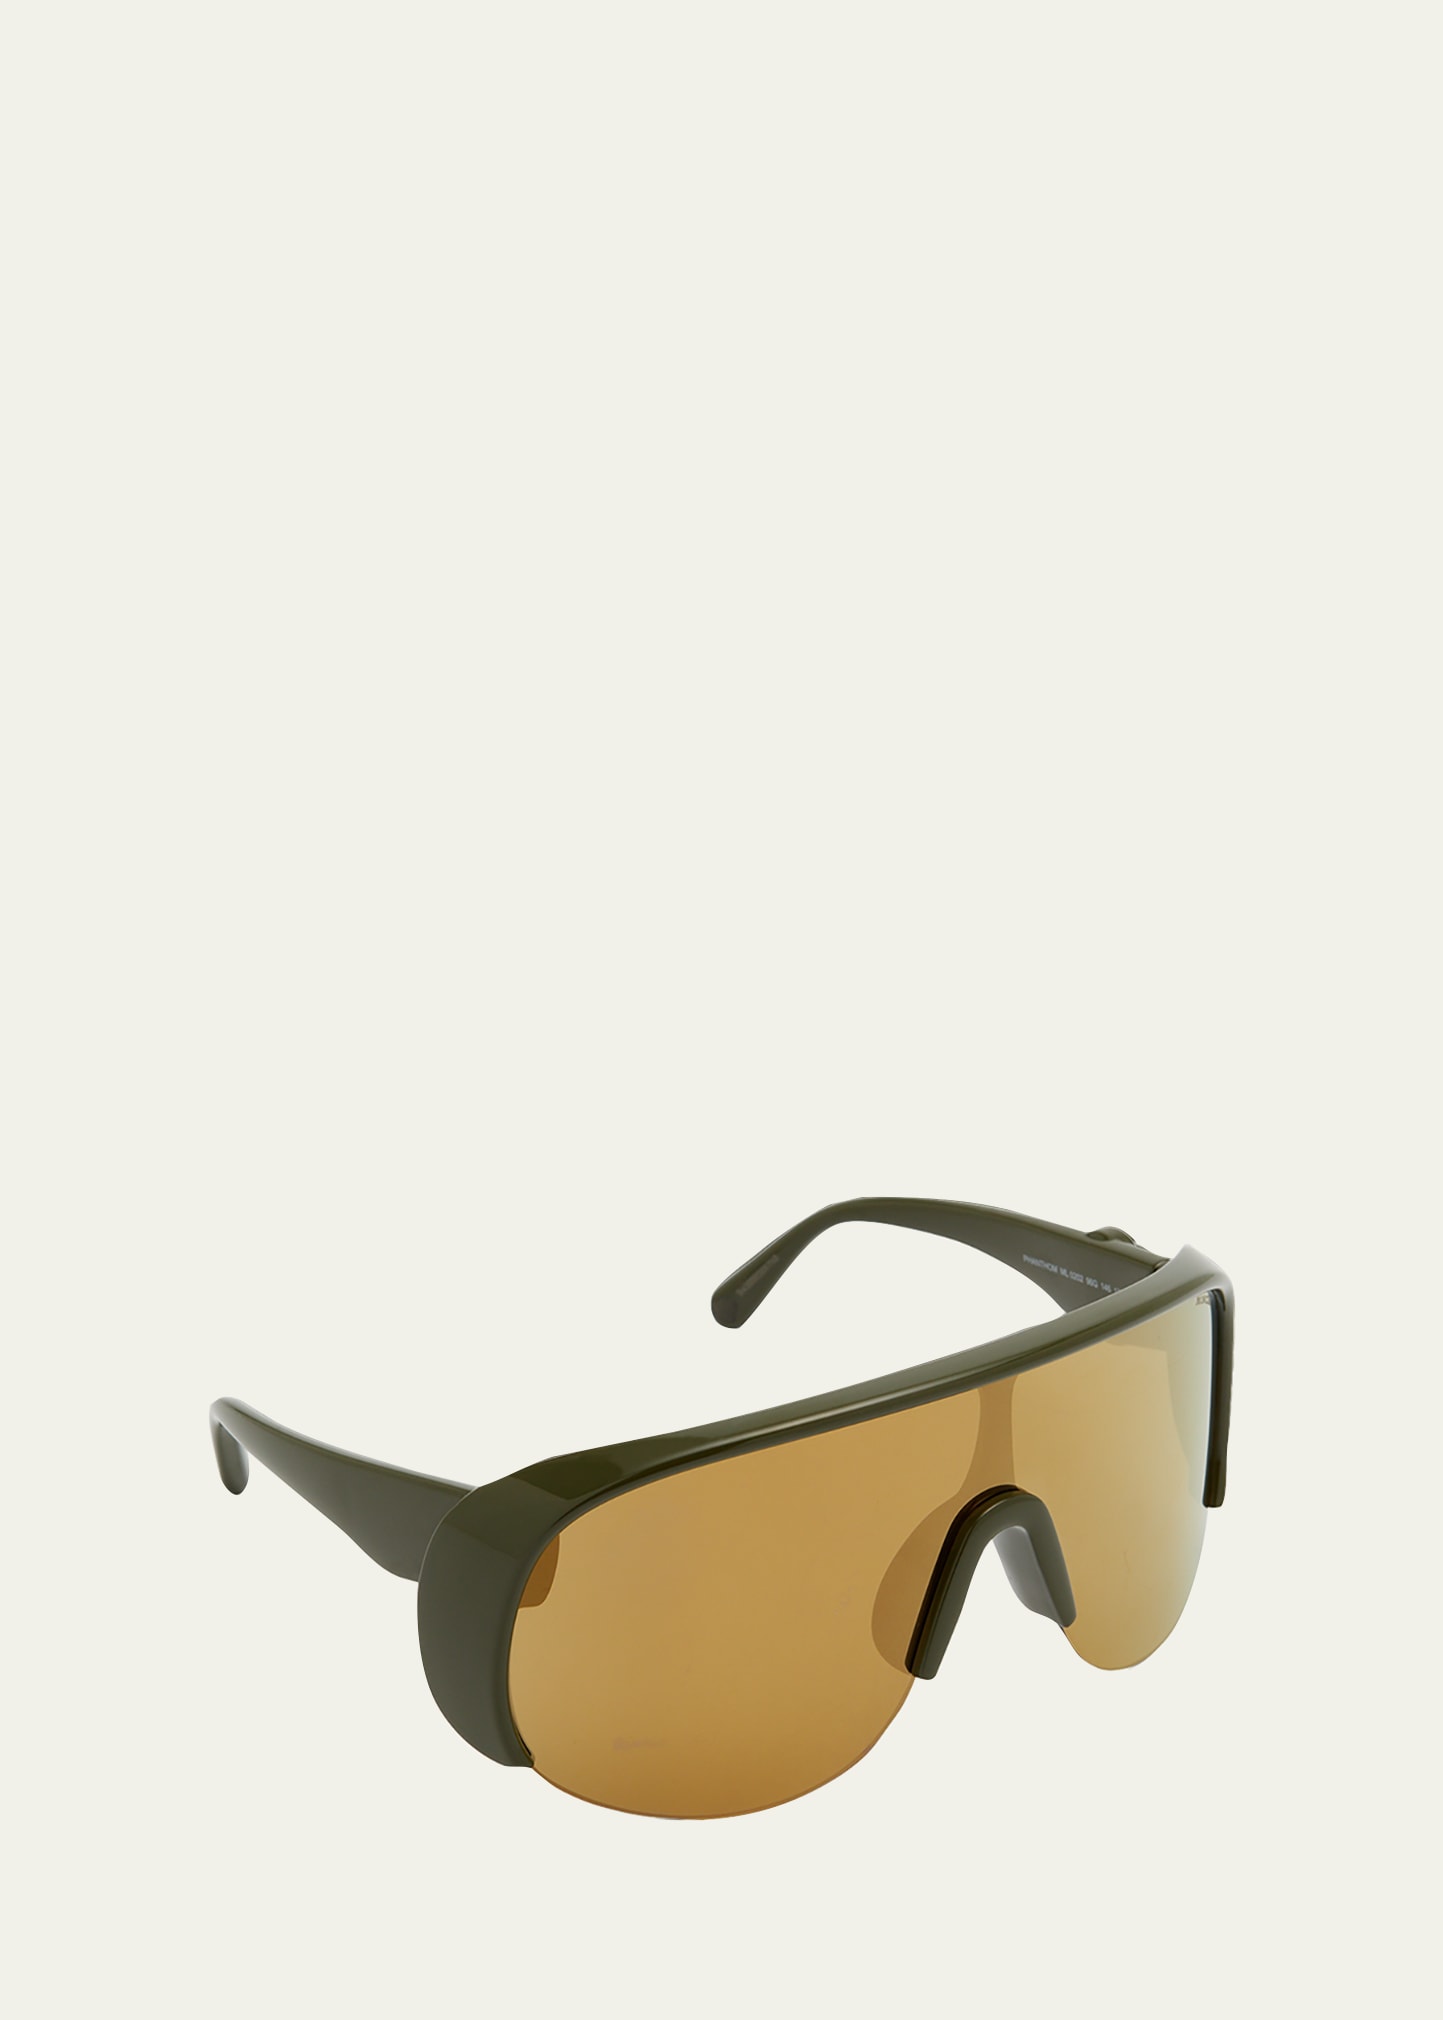 Moncler Lunettes Men's Phantom Mirror Lens Shield Sunglasses In Green/brown